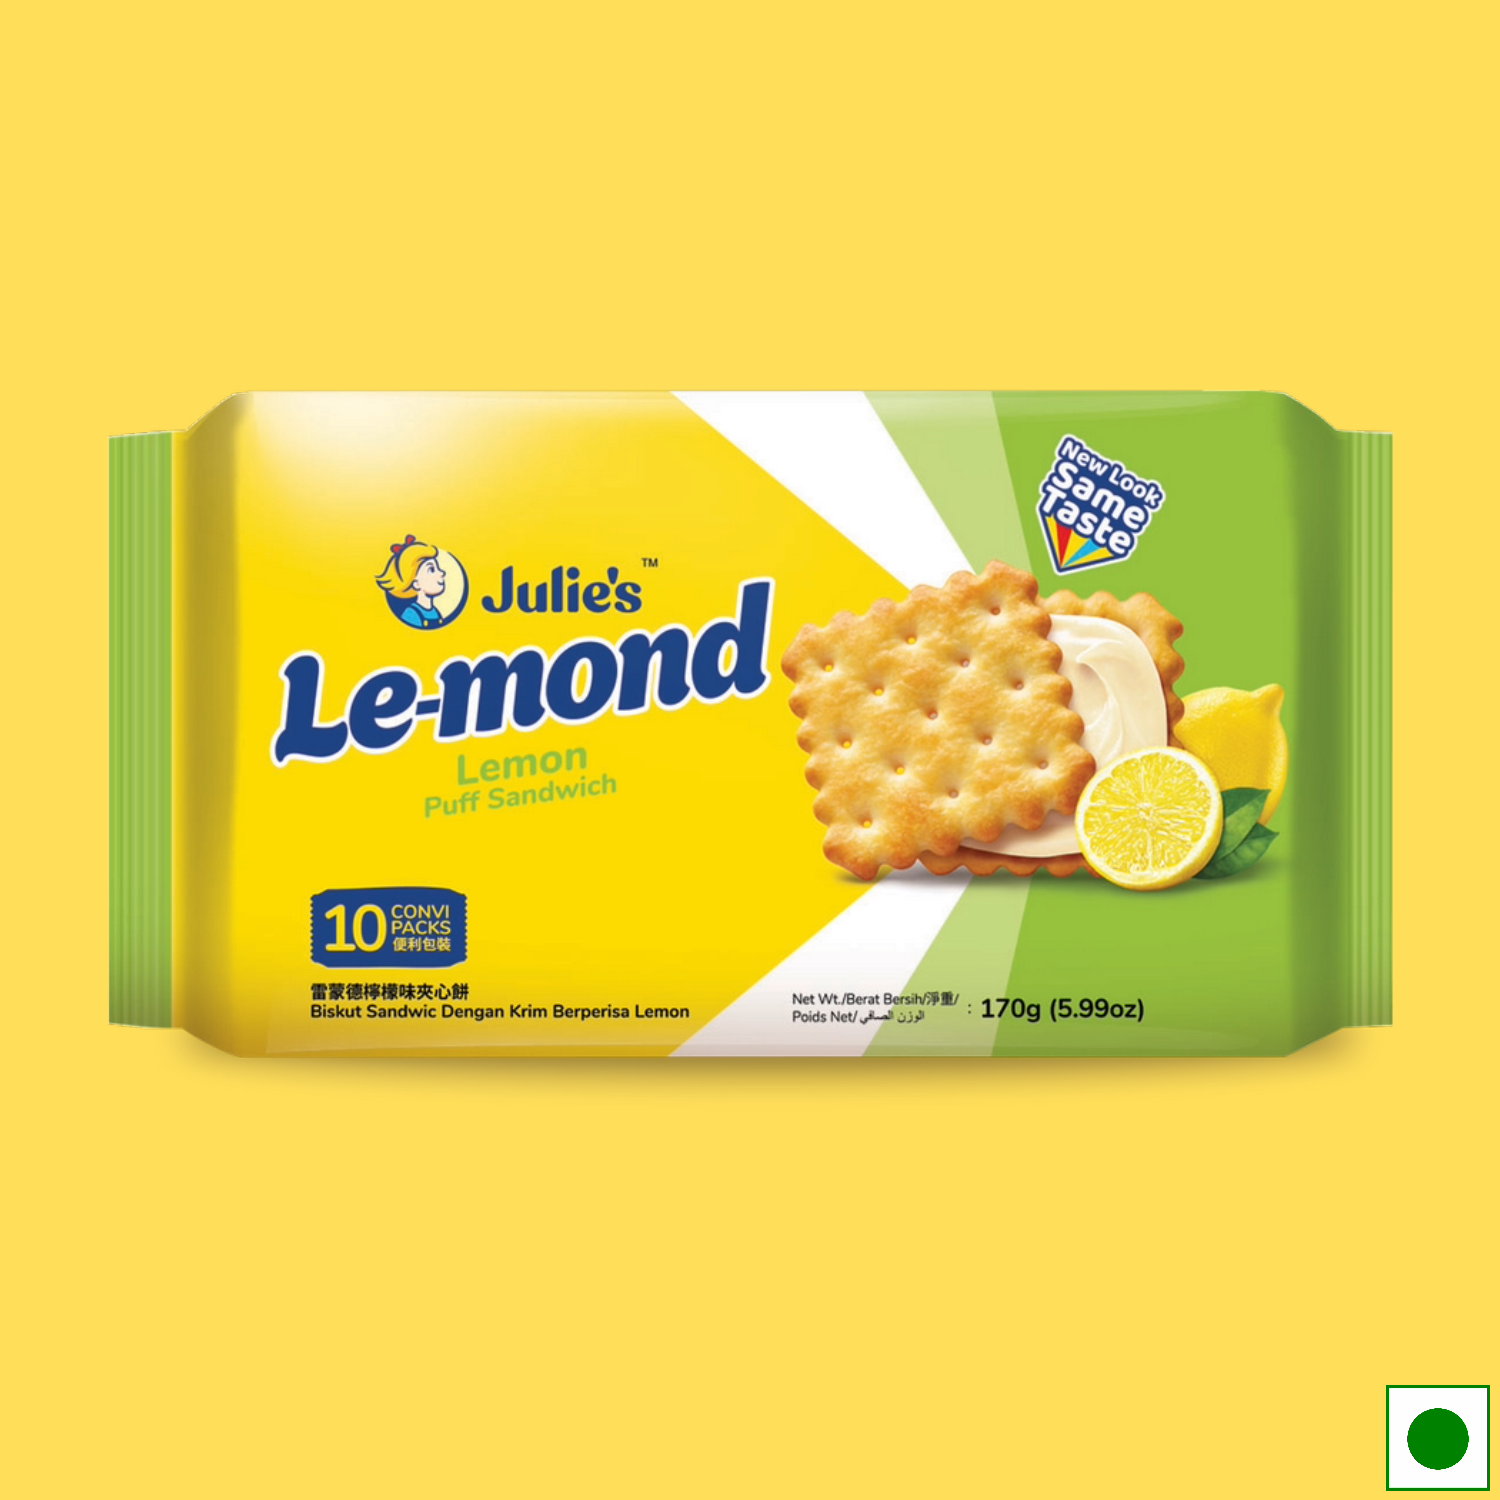 Julie's Le-Mond Lemon Puff Sandwich, 170g (Imported)